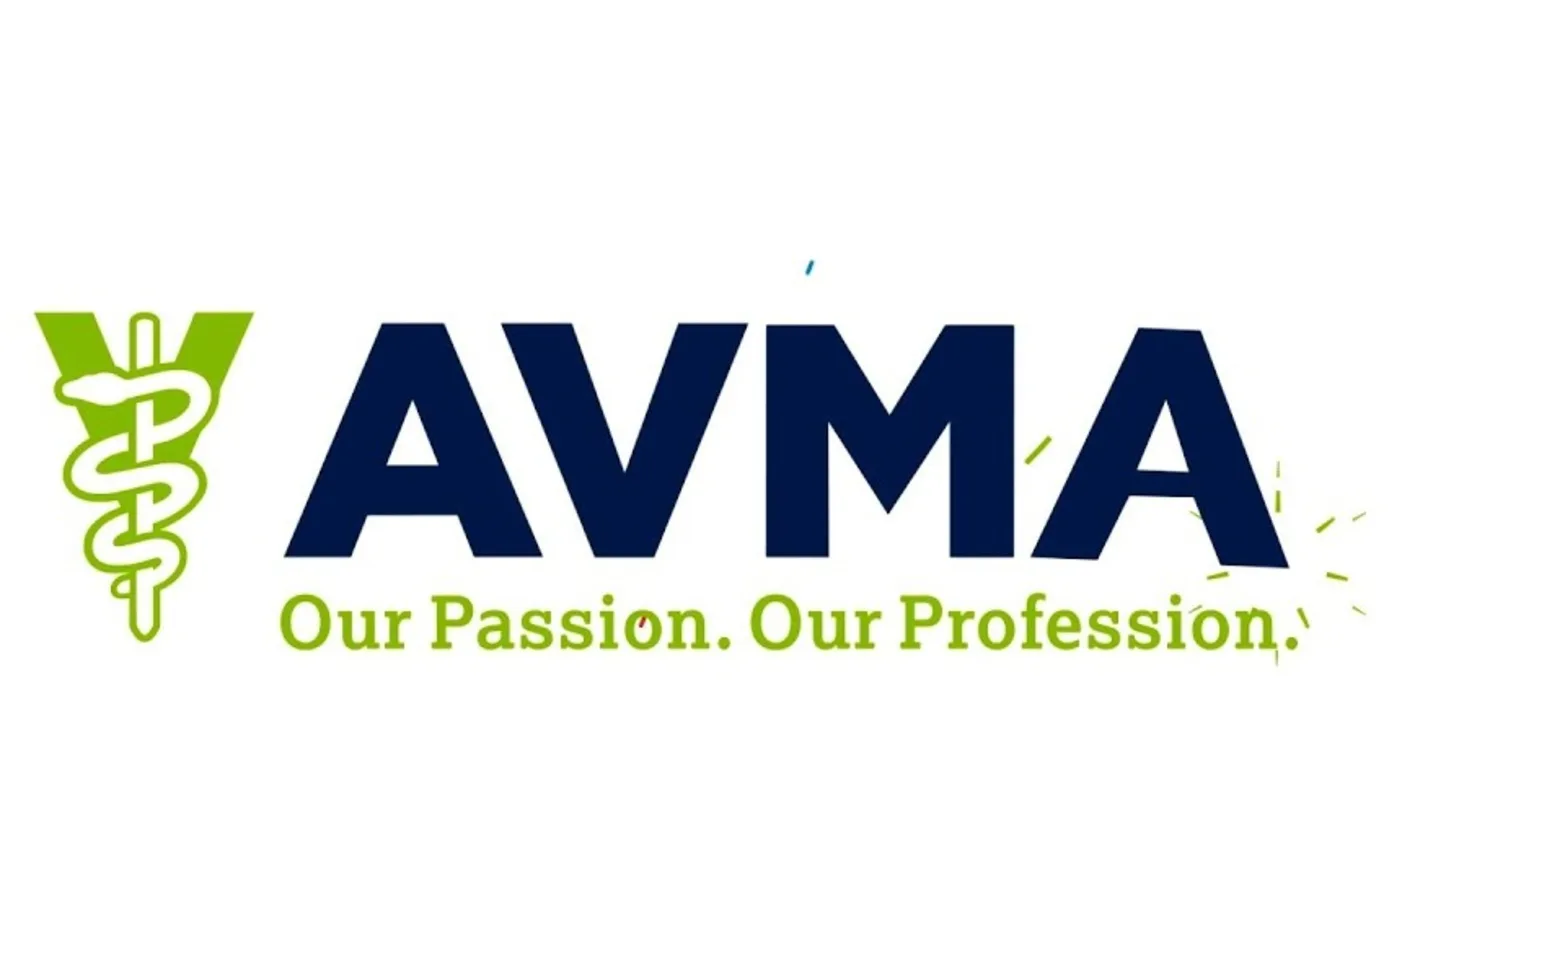 AVMA certified